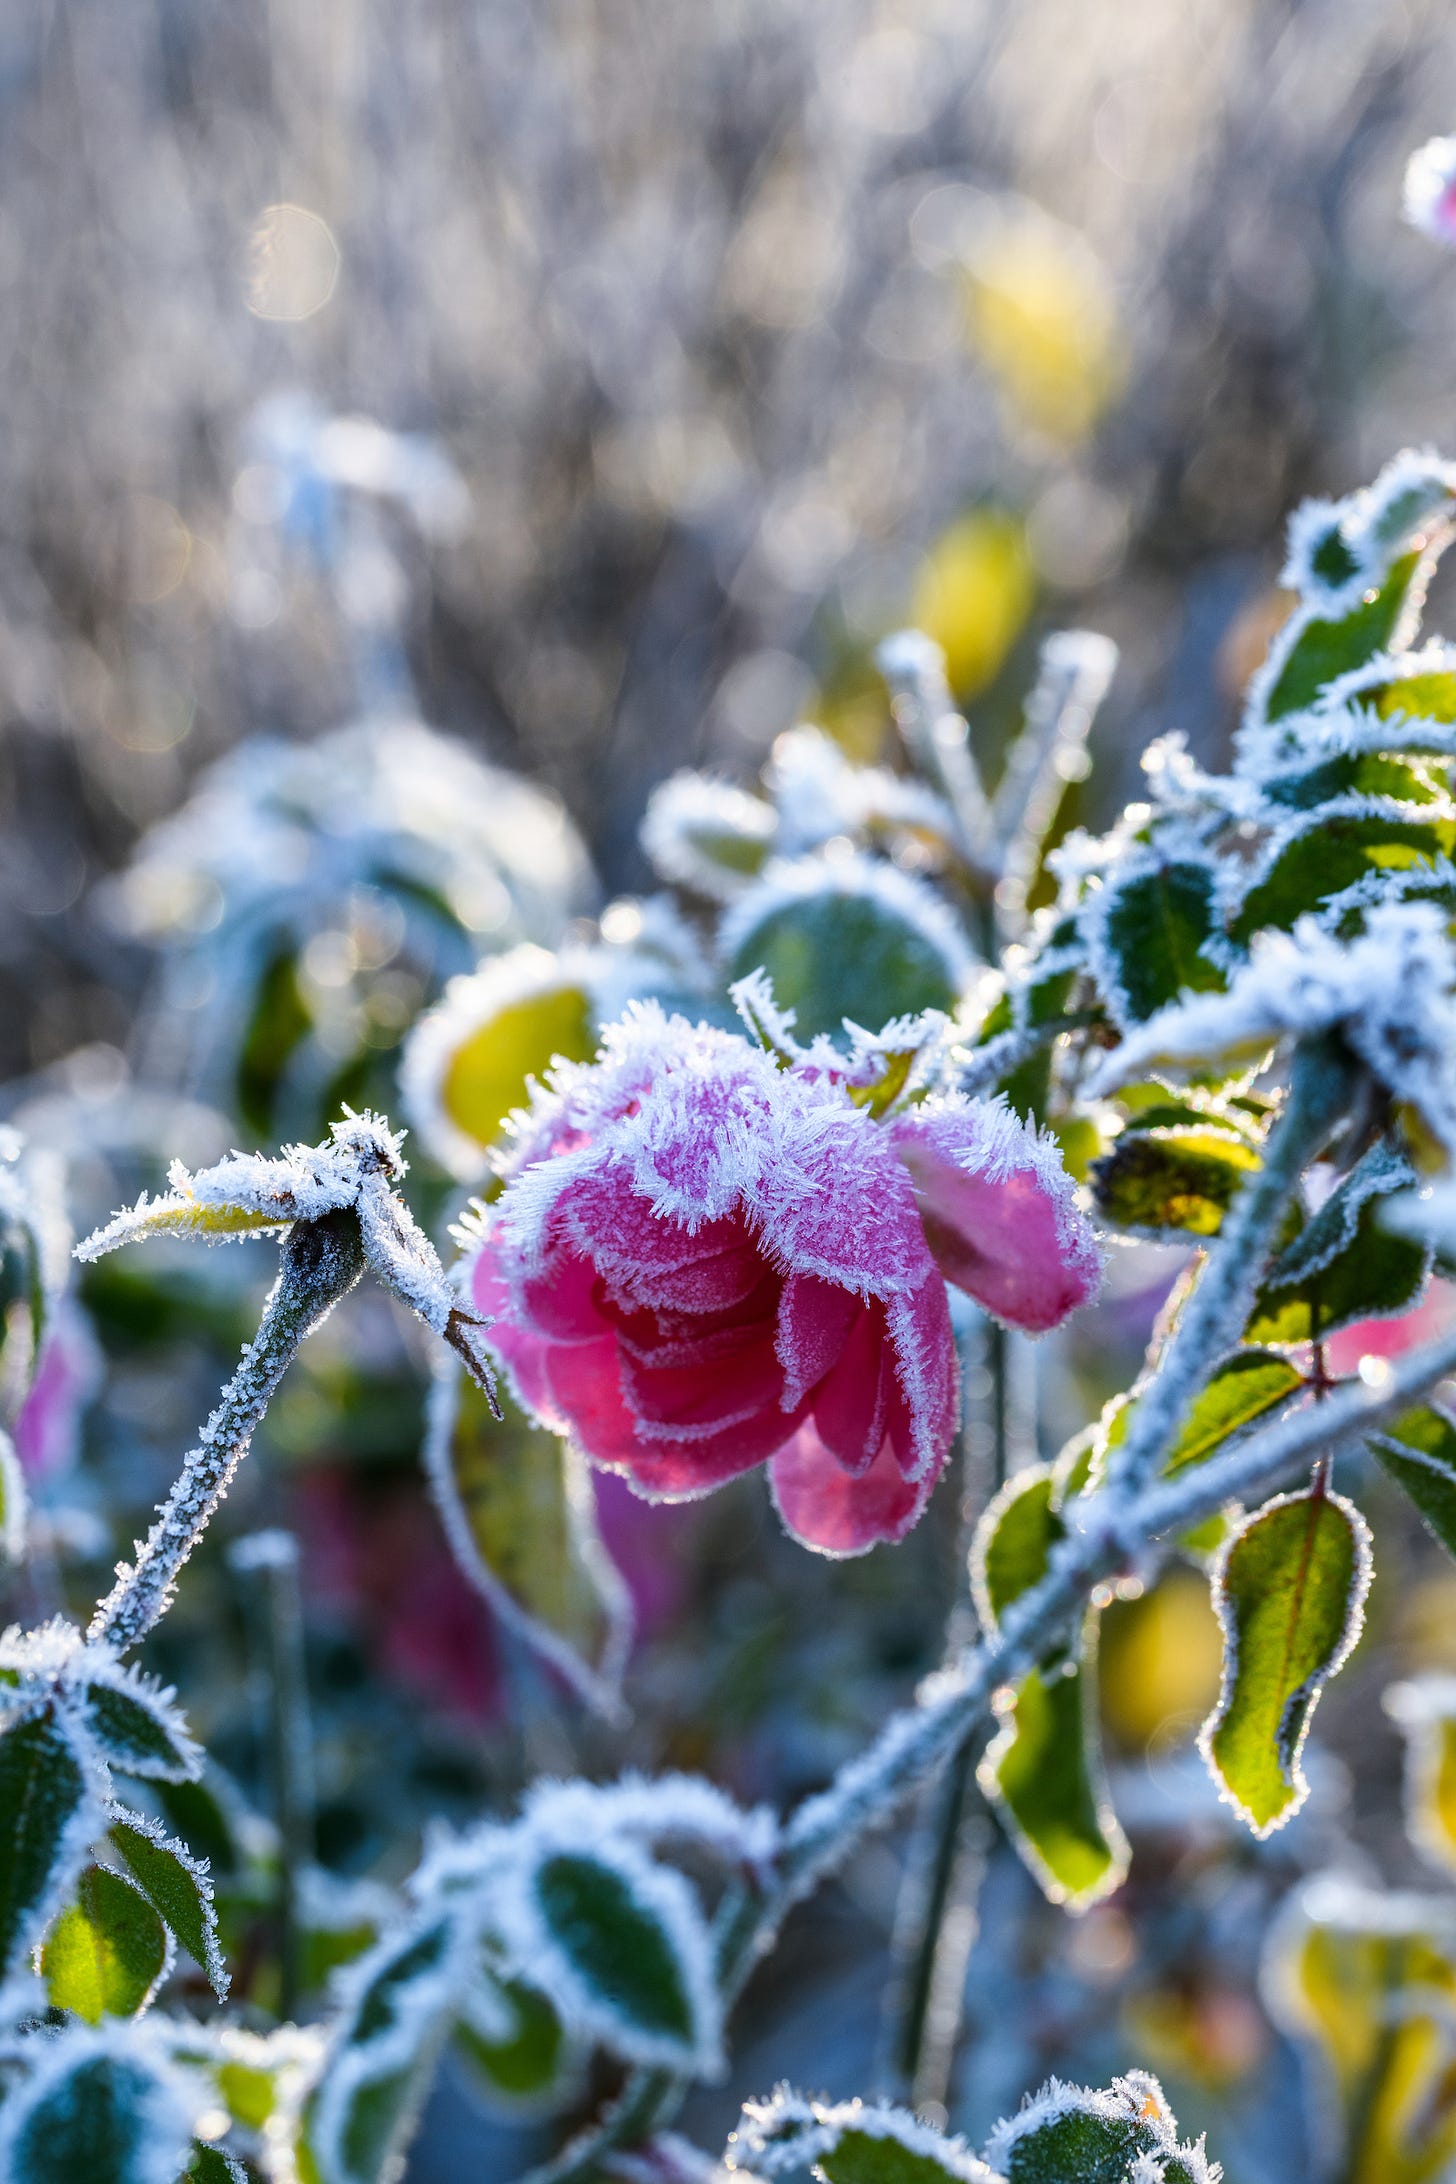 Frosty rose in a garden